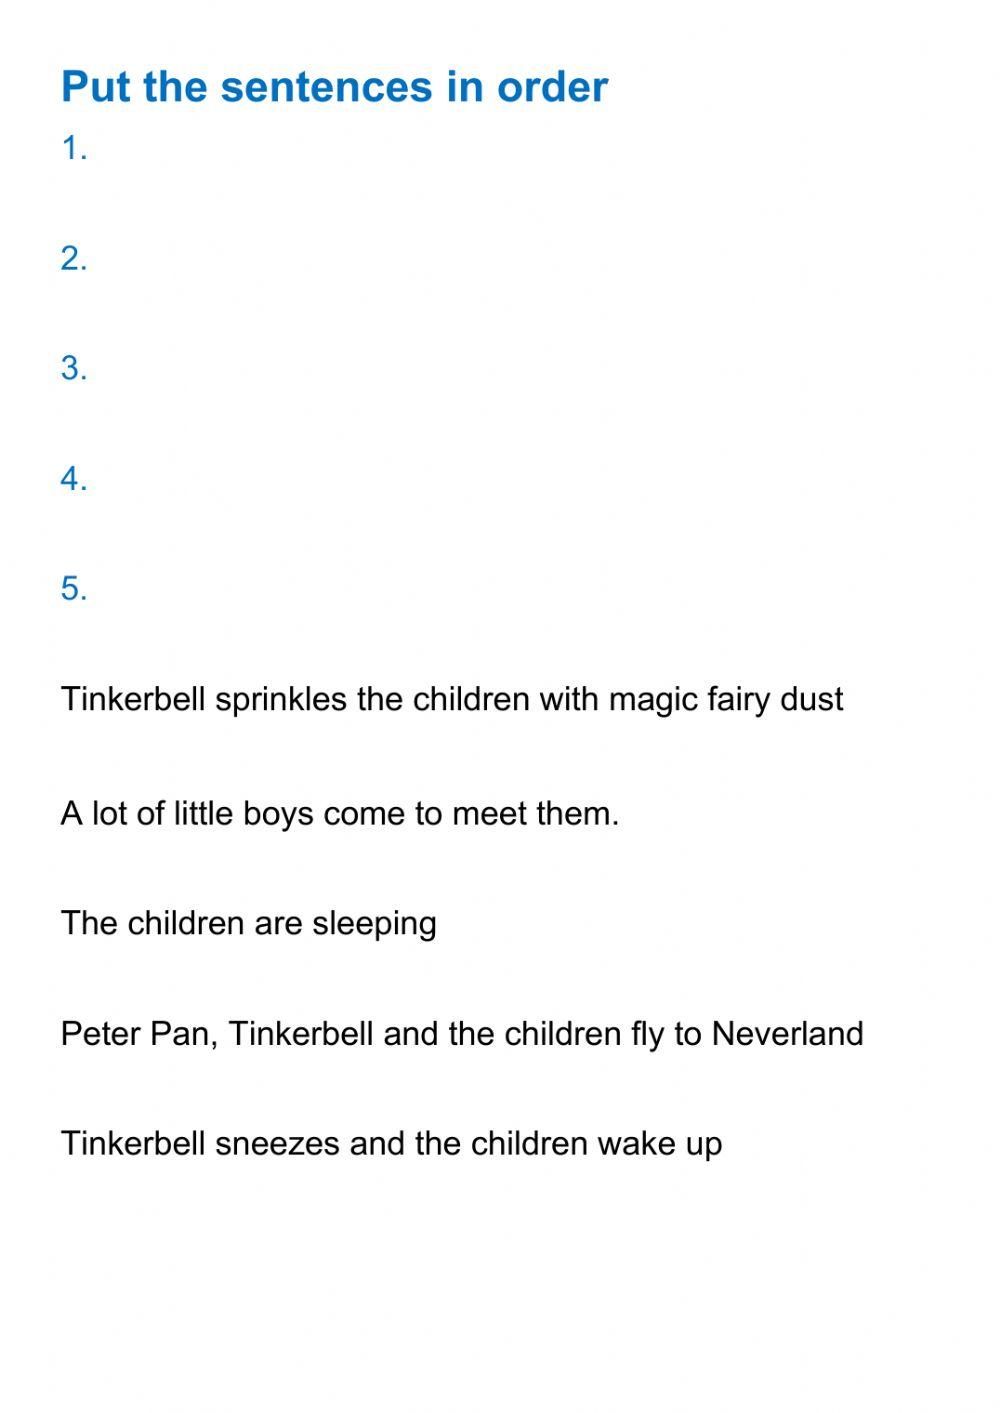 Peter Pan, parts 1, 2, 3